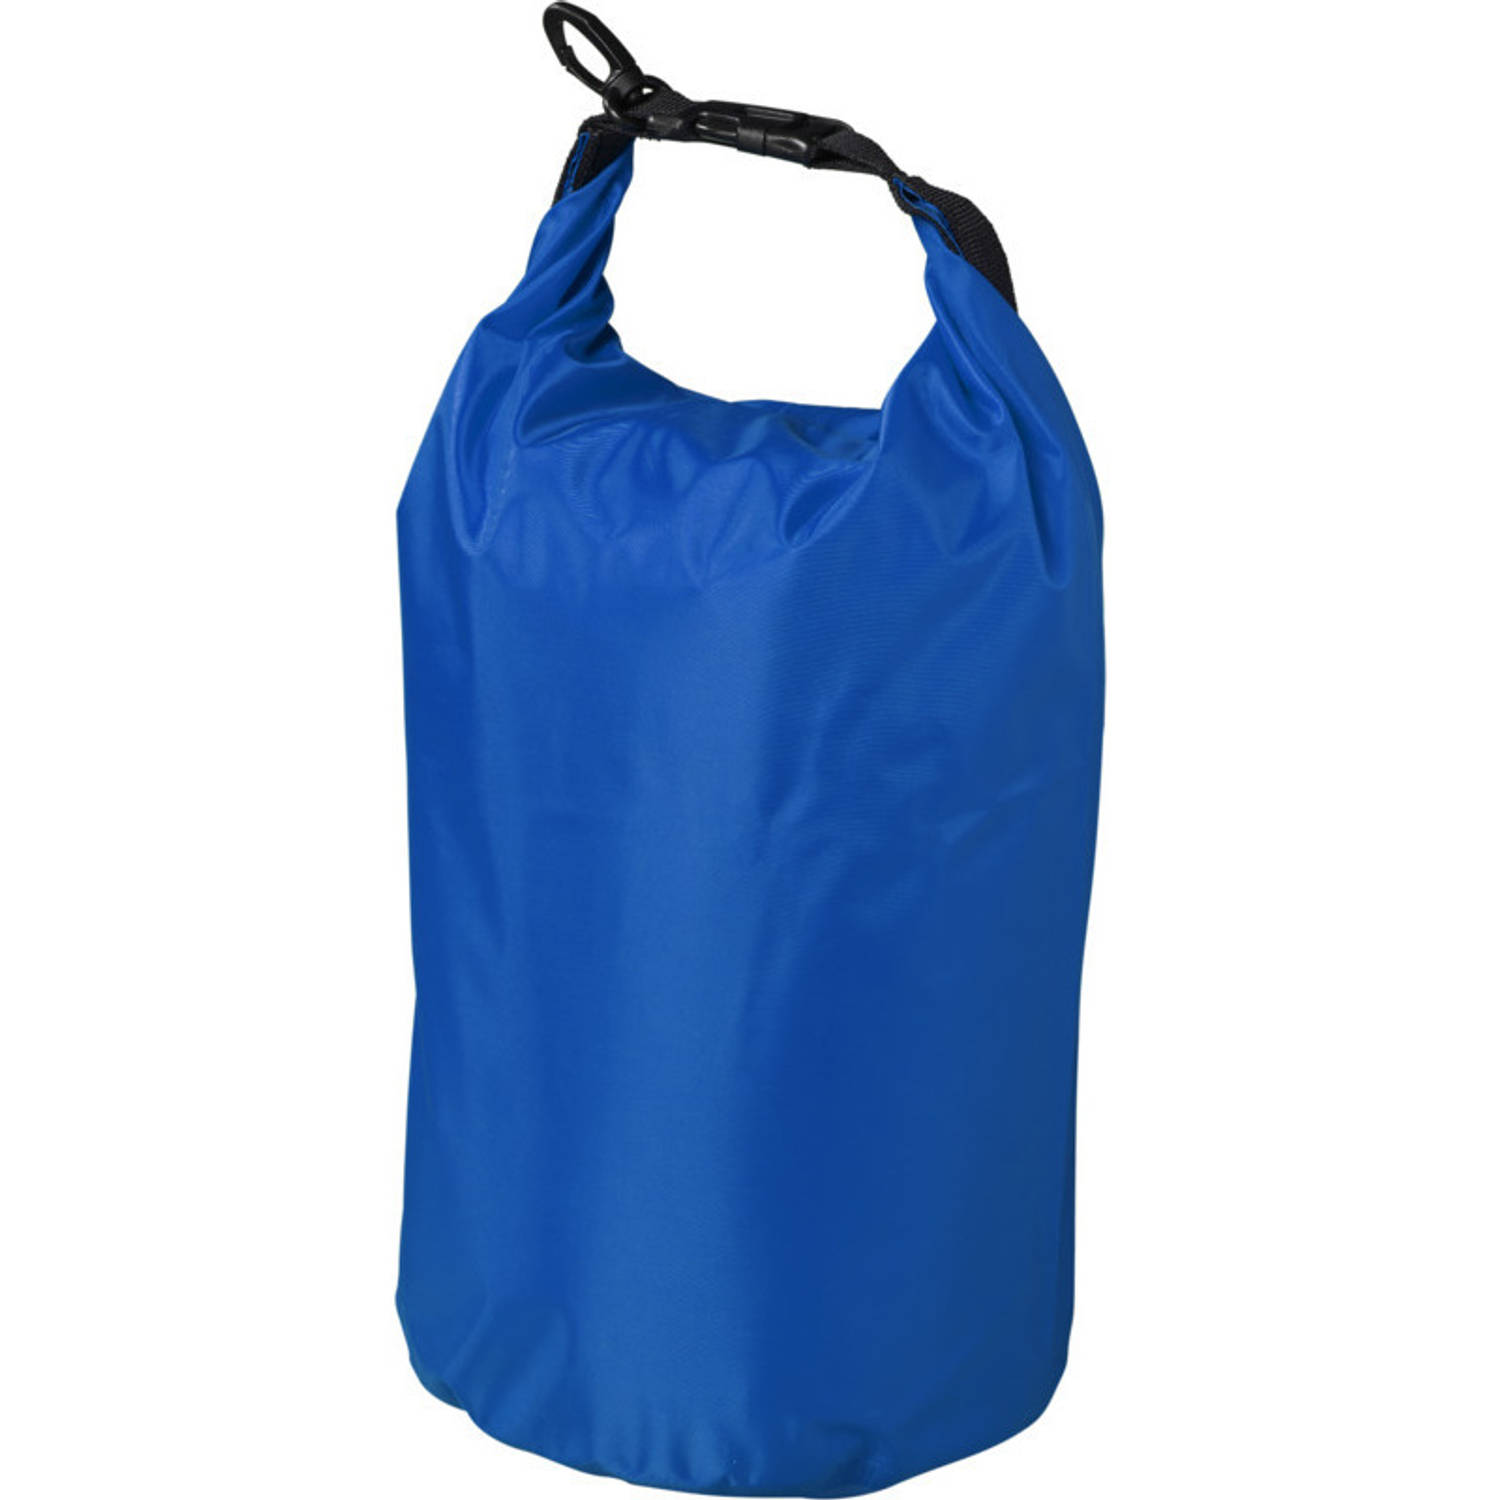 Waterdichte Duffel Bag-plunjezak 10 Liter Blauw Reistas (Volwassen)